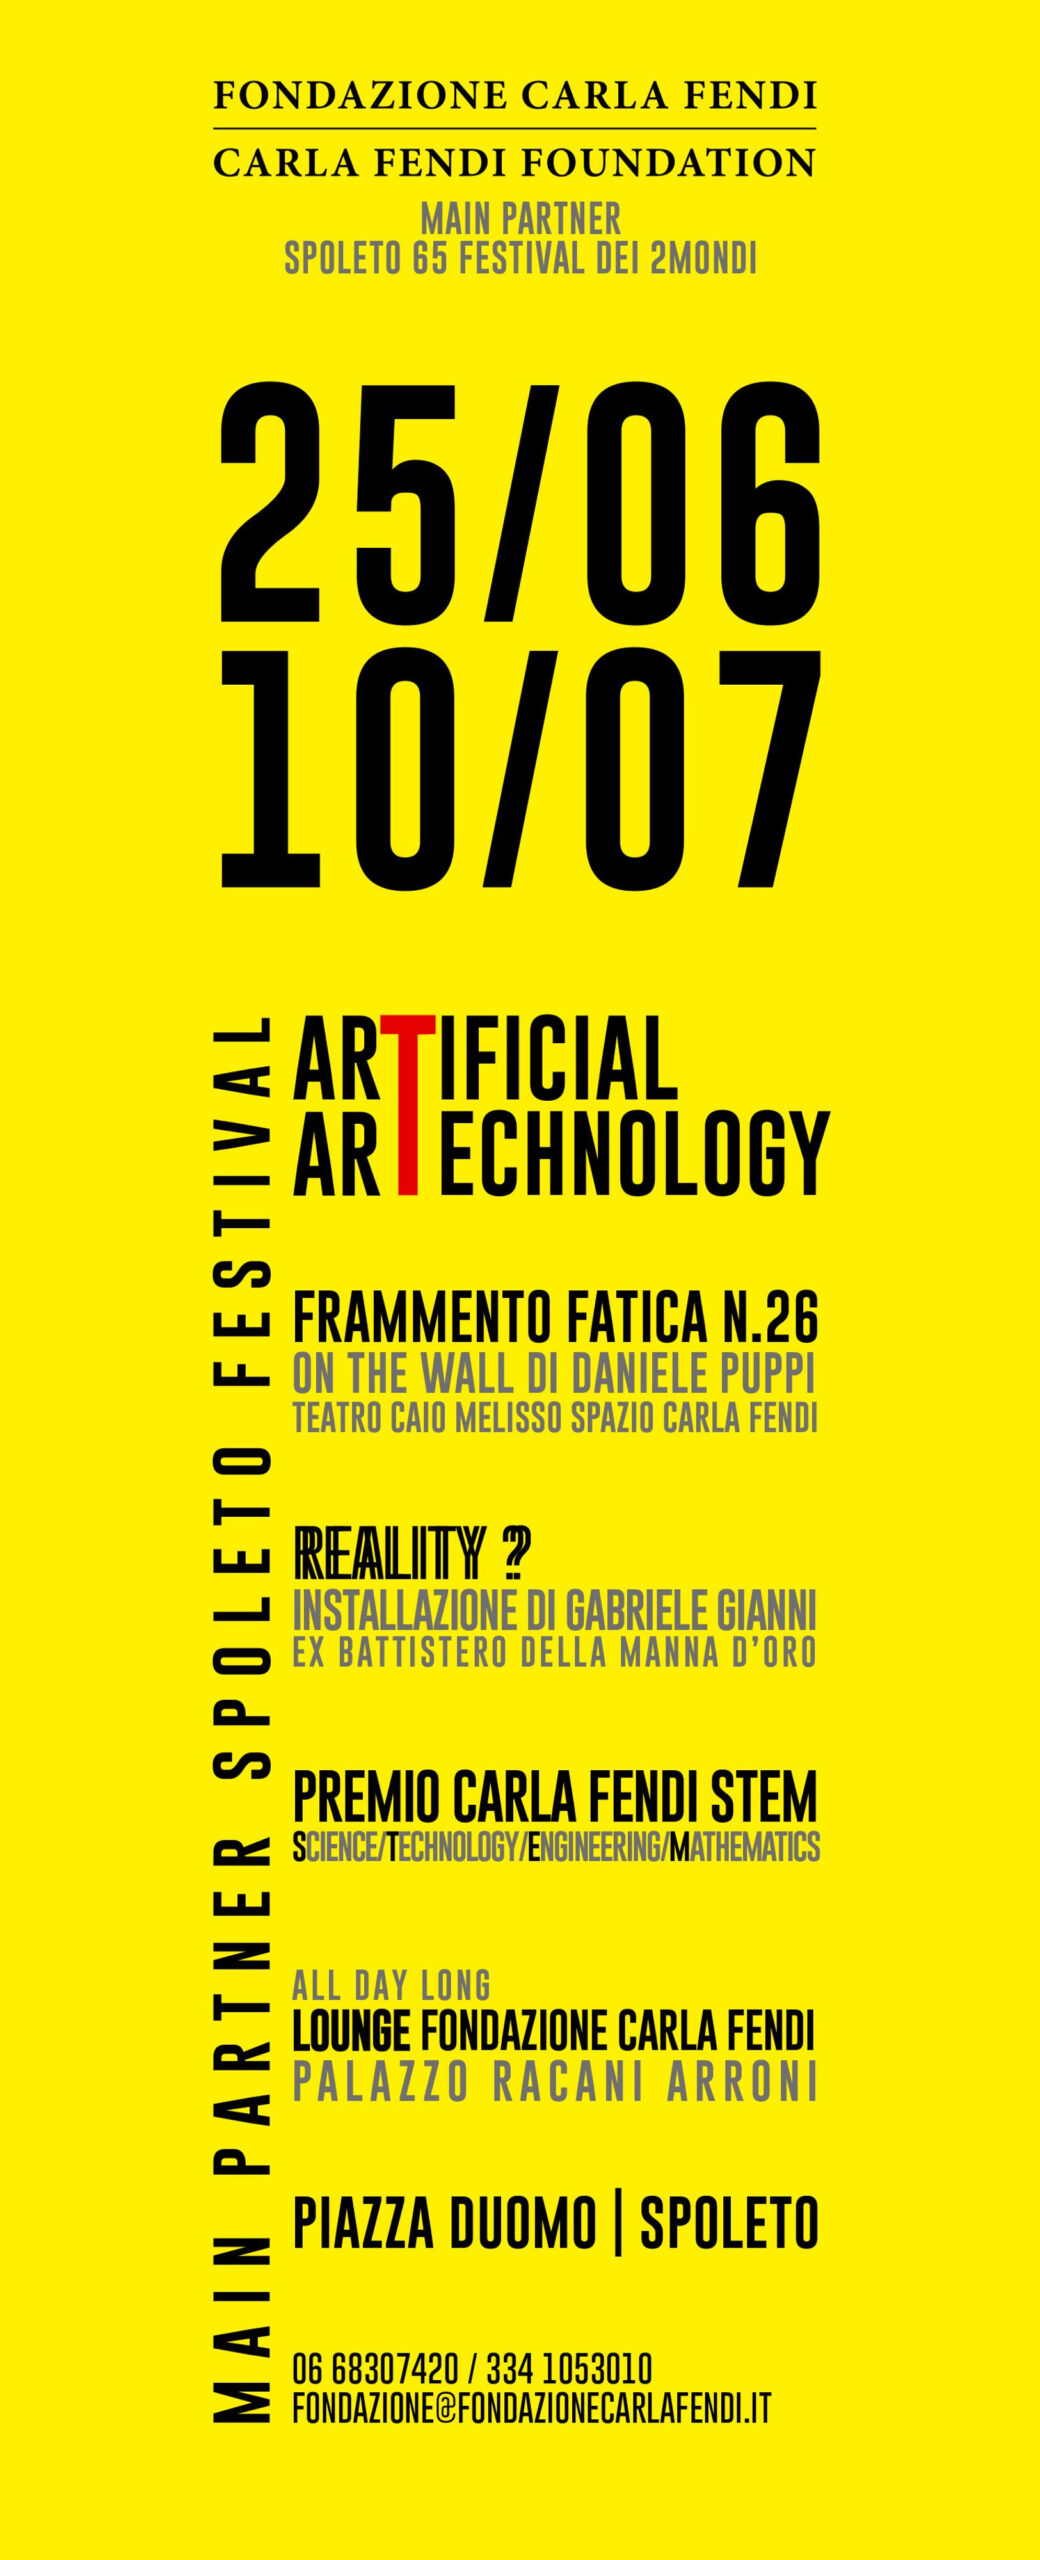 Fondazione Carla fendi - Artificial Artechnology